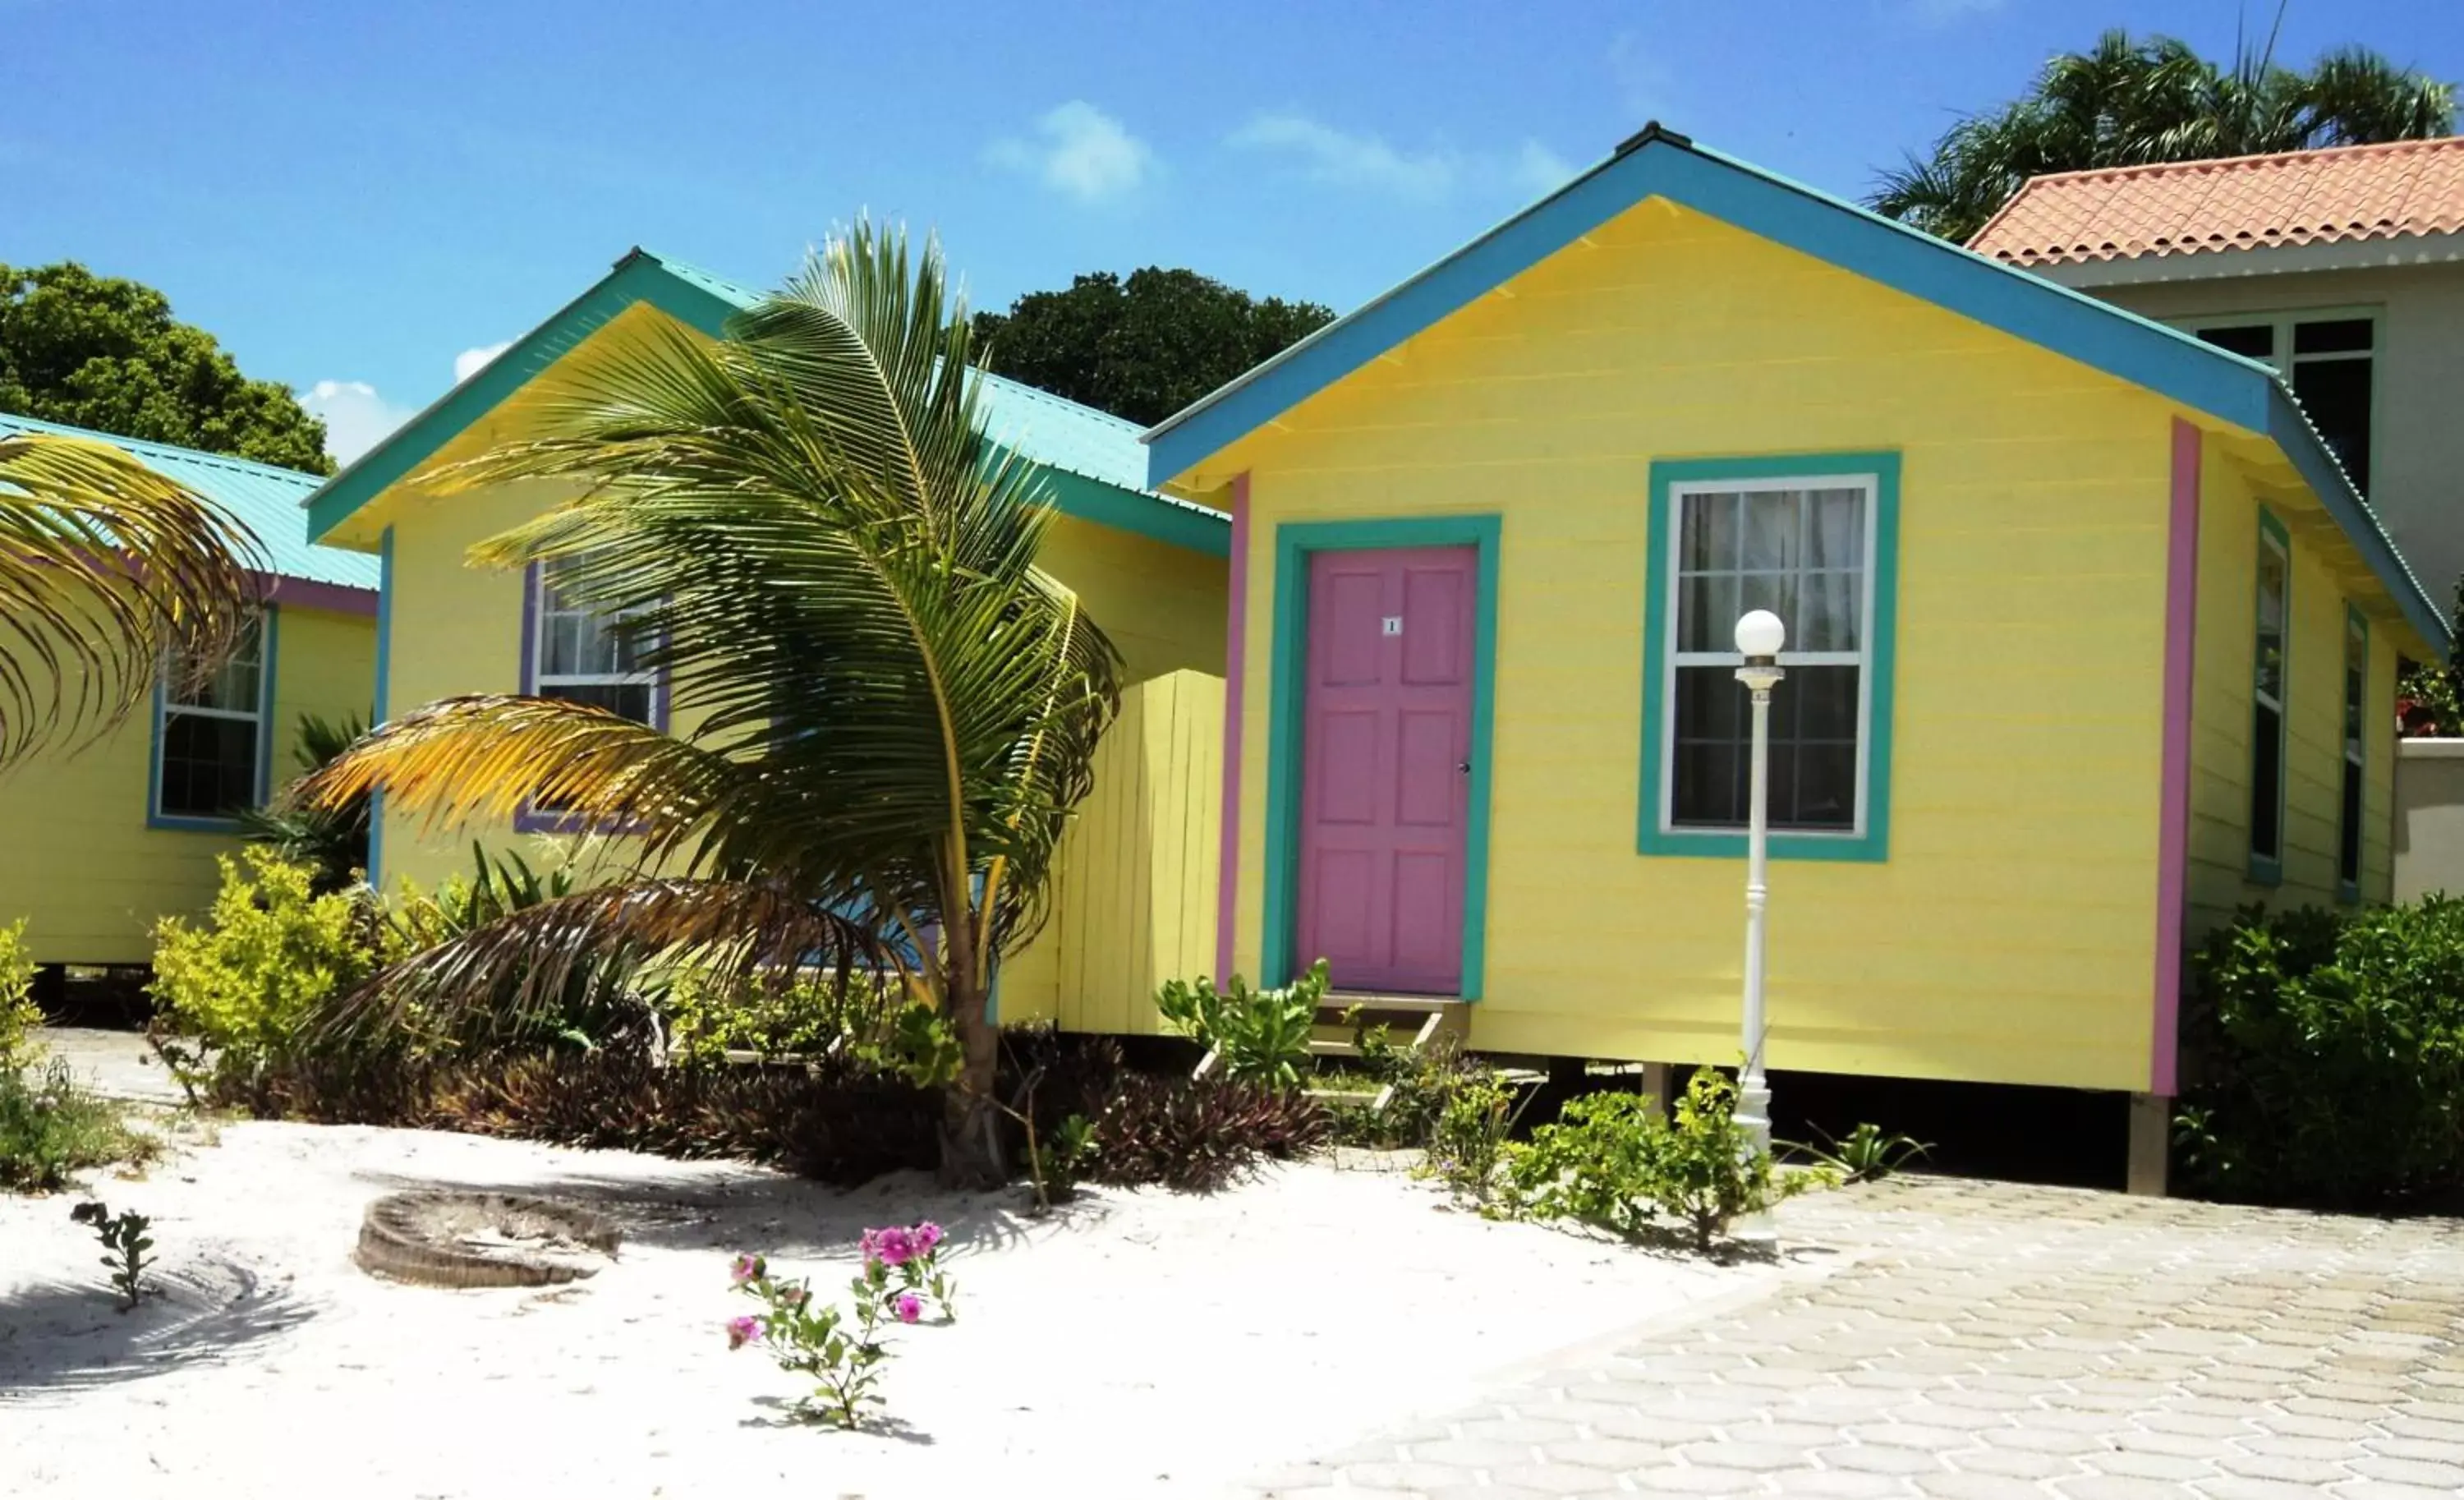 Property Building in Royal Caribbean Resort